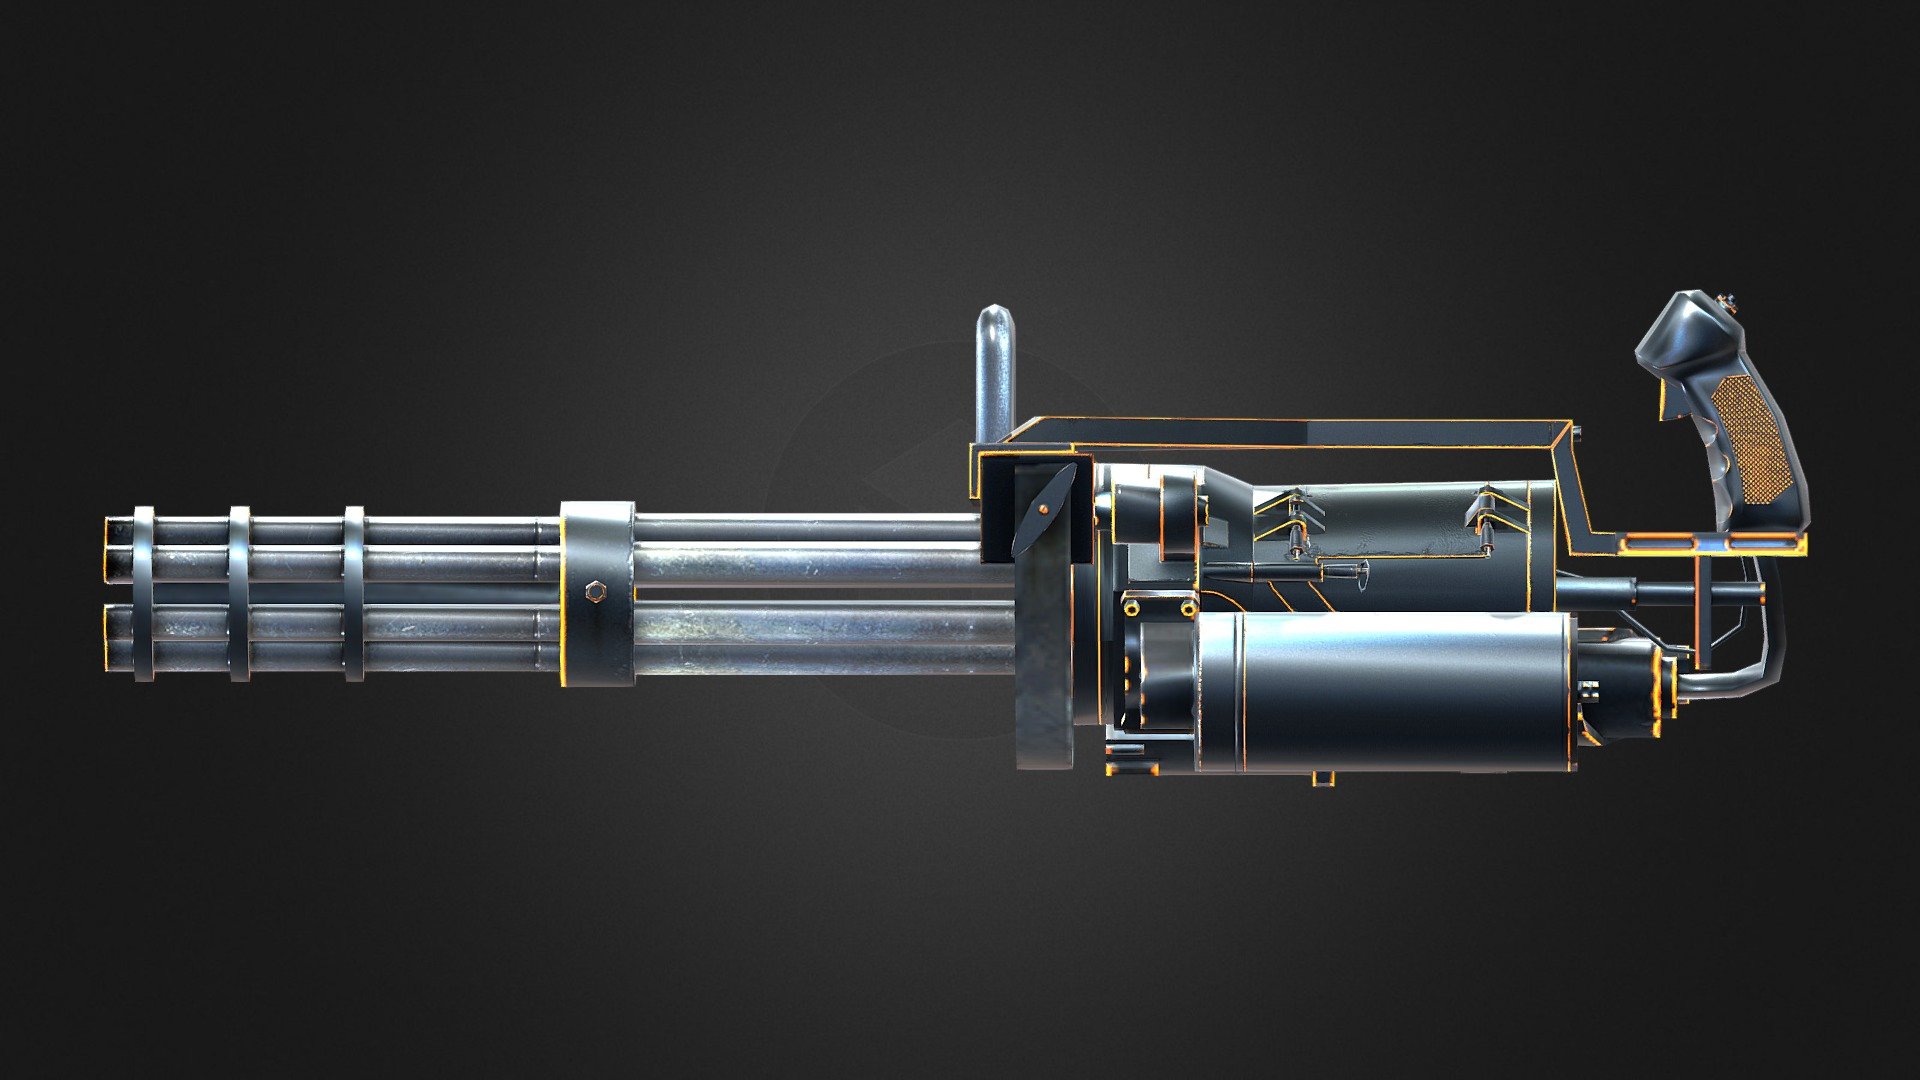 CrossFire's Gatling Gun Noble Silver - 3D model by AlxDemento 3d model